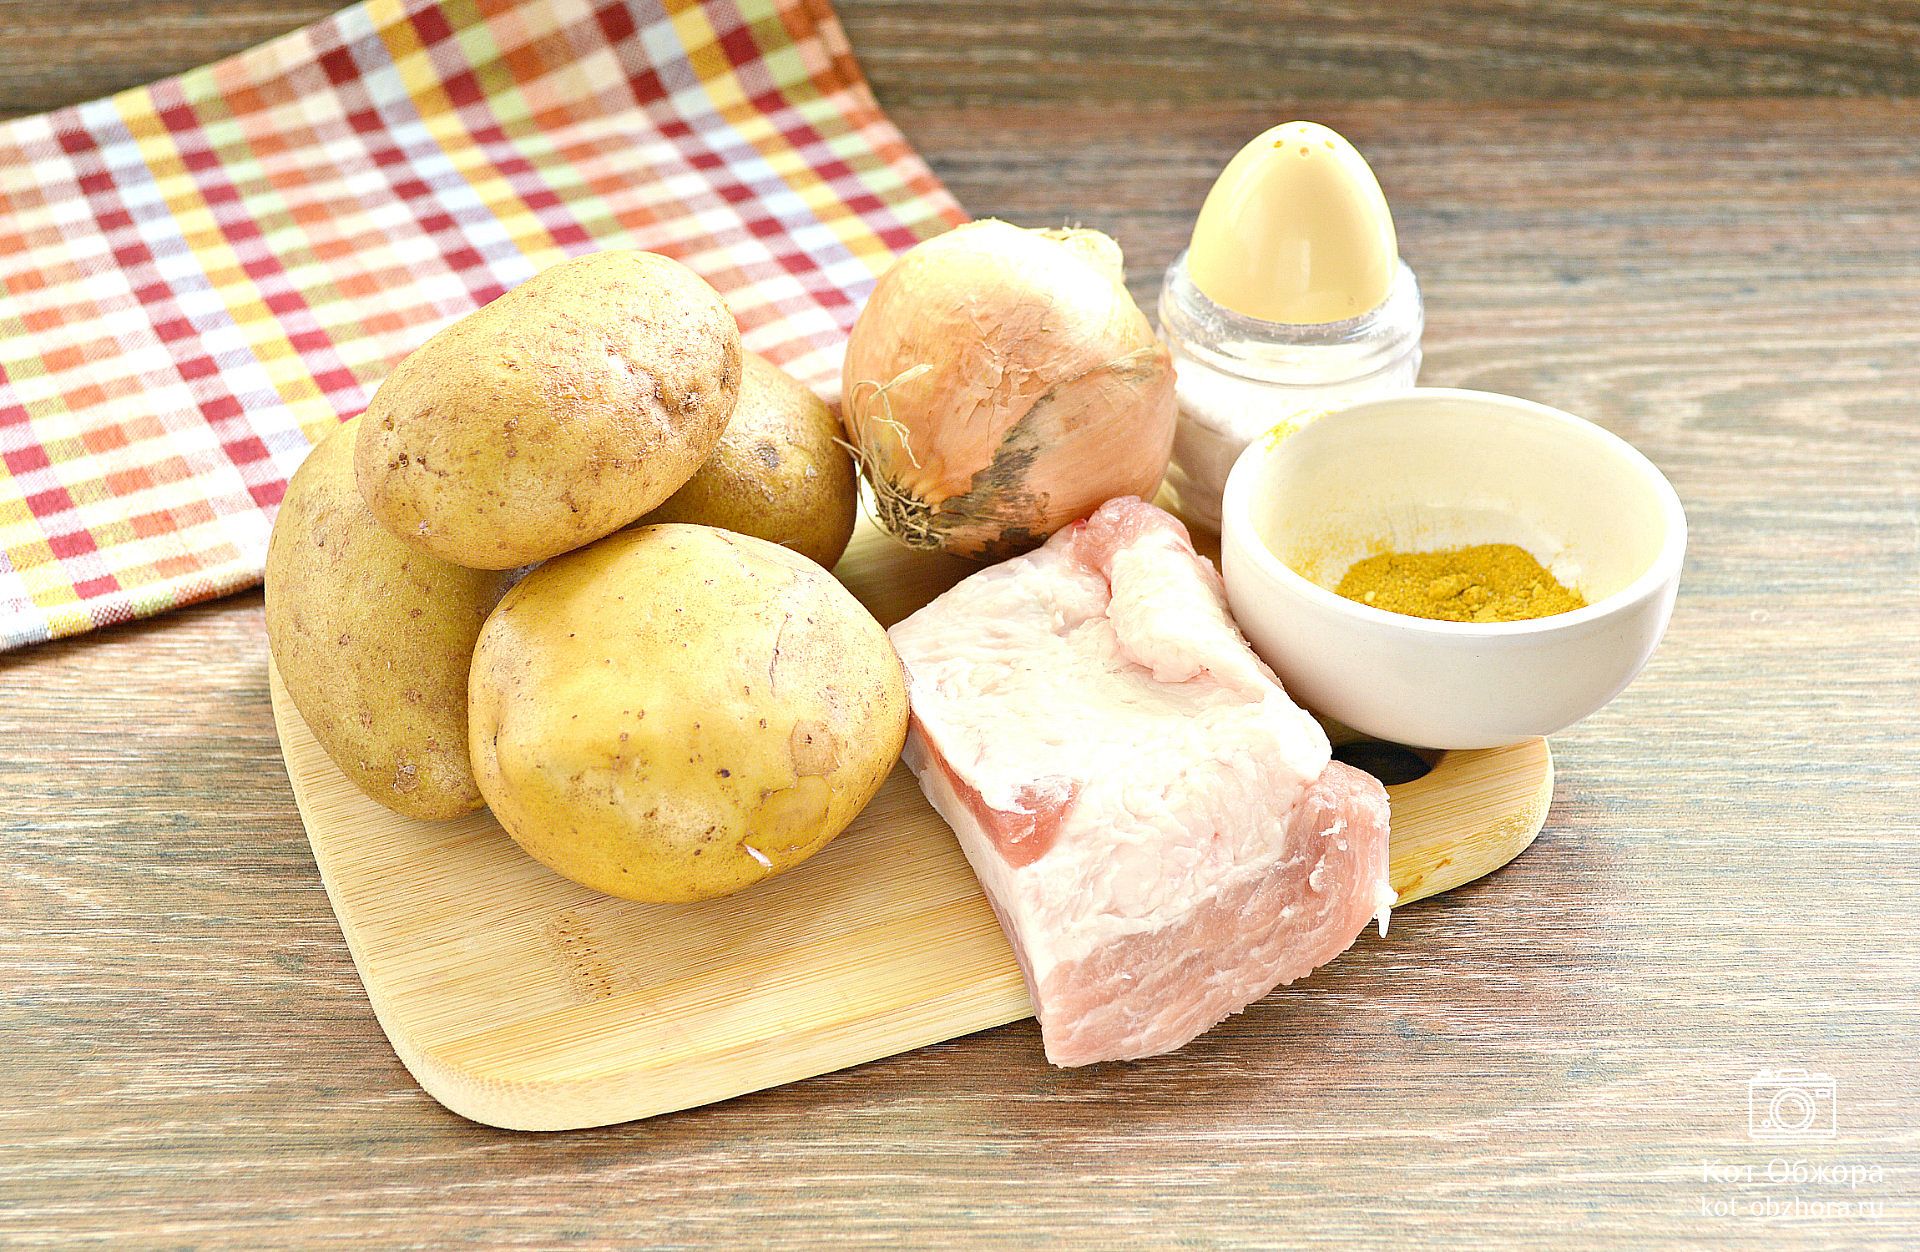 Неизвестное о знакомых продуктах. Картофель, сало и лимон